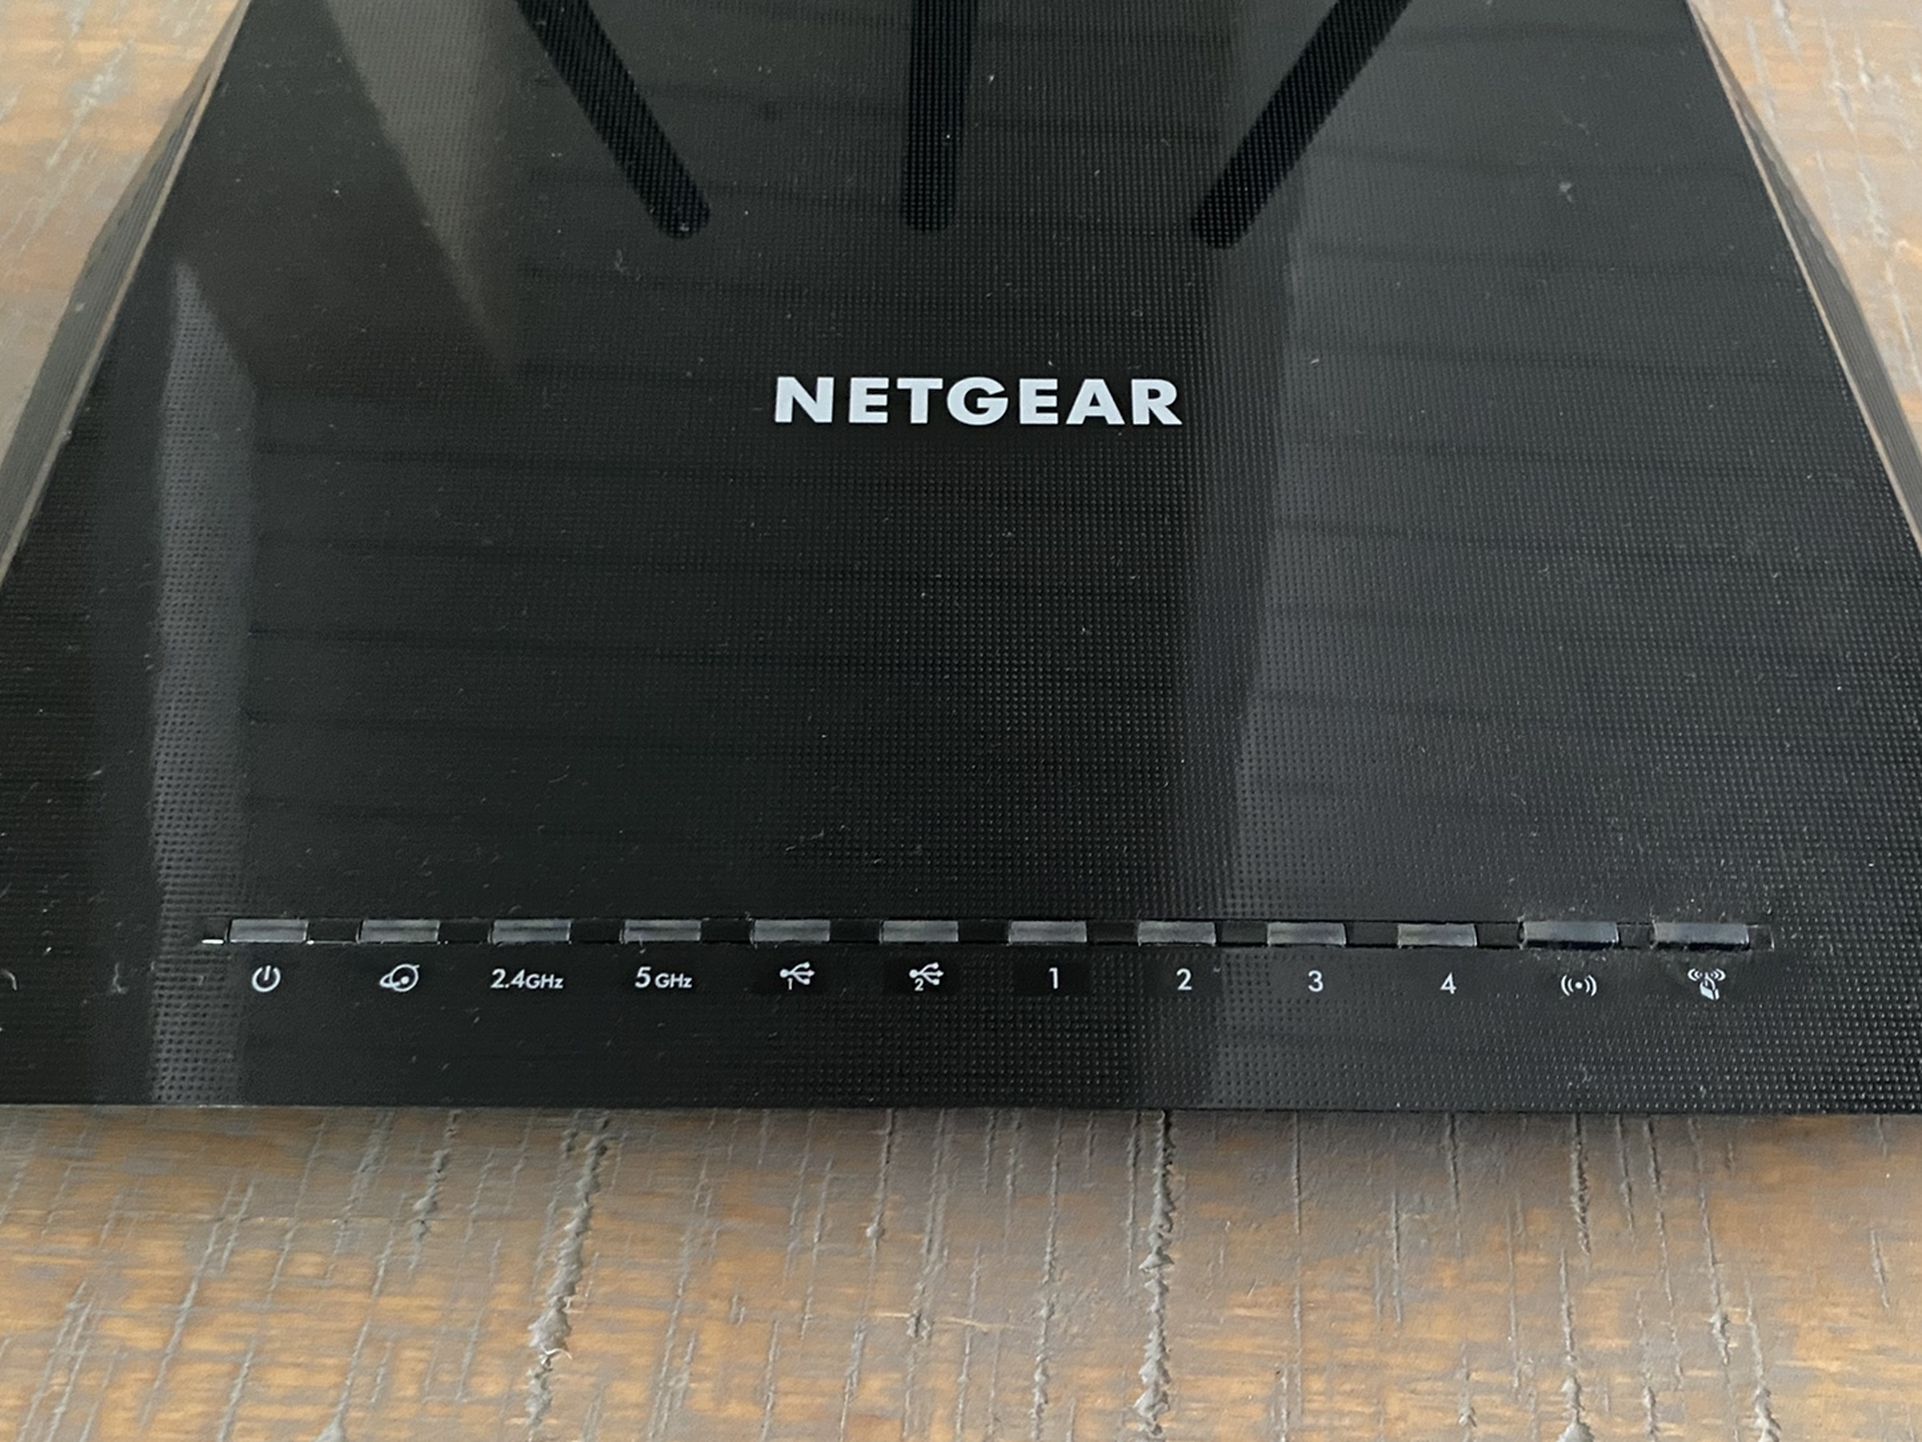 Netgear Nighthawk AC1750/ R6400 WiFi Router